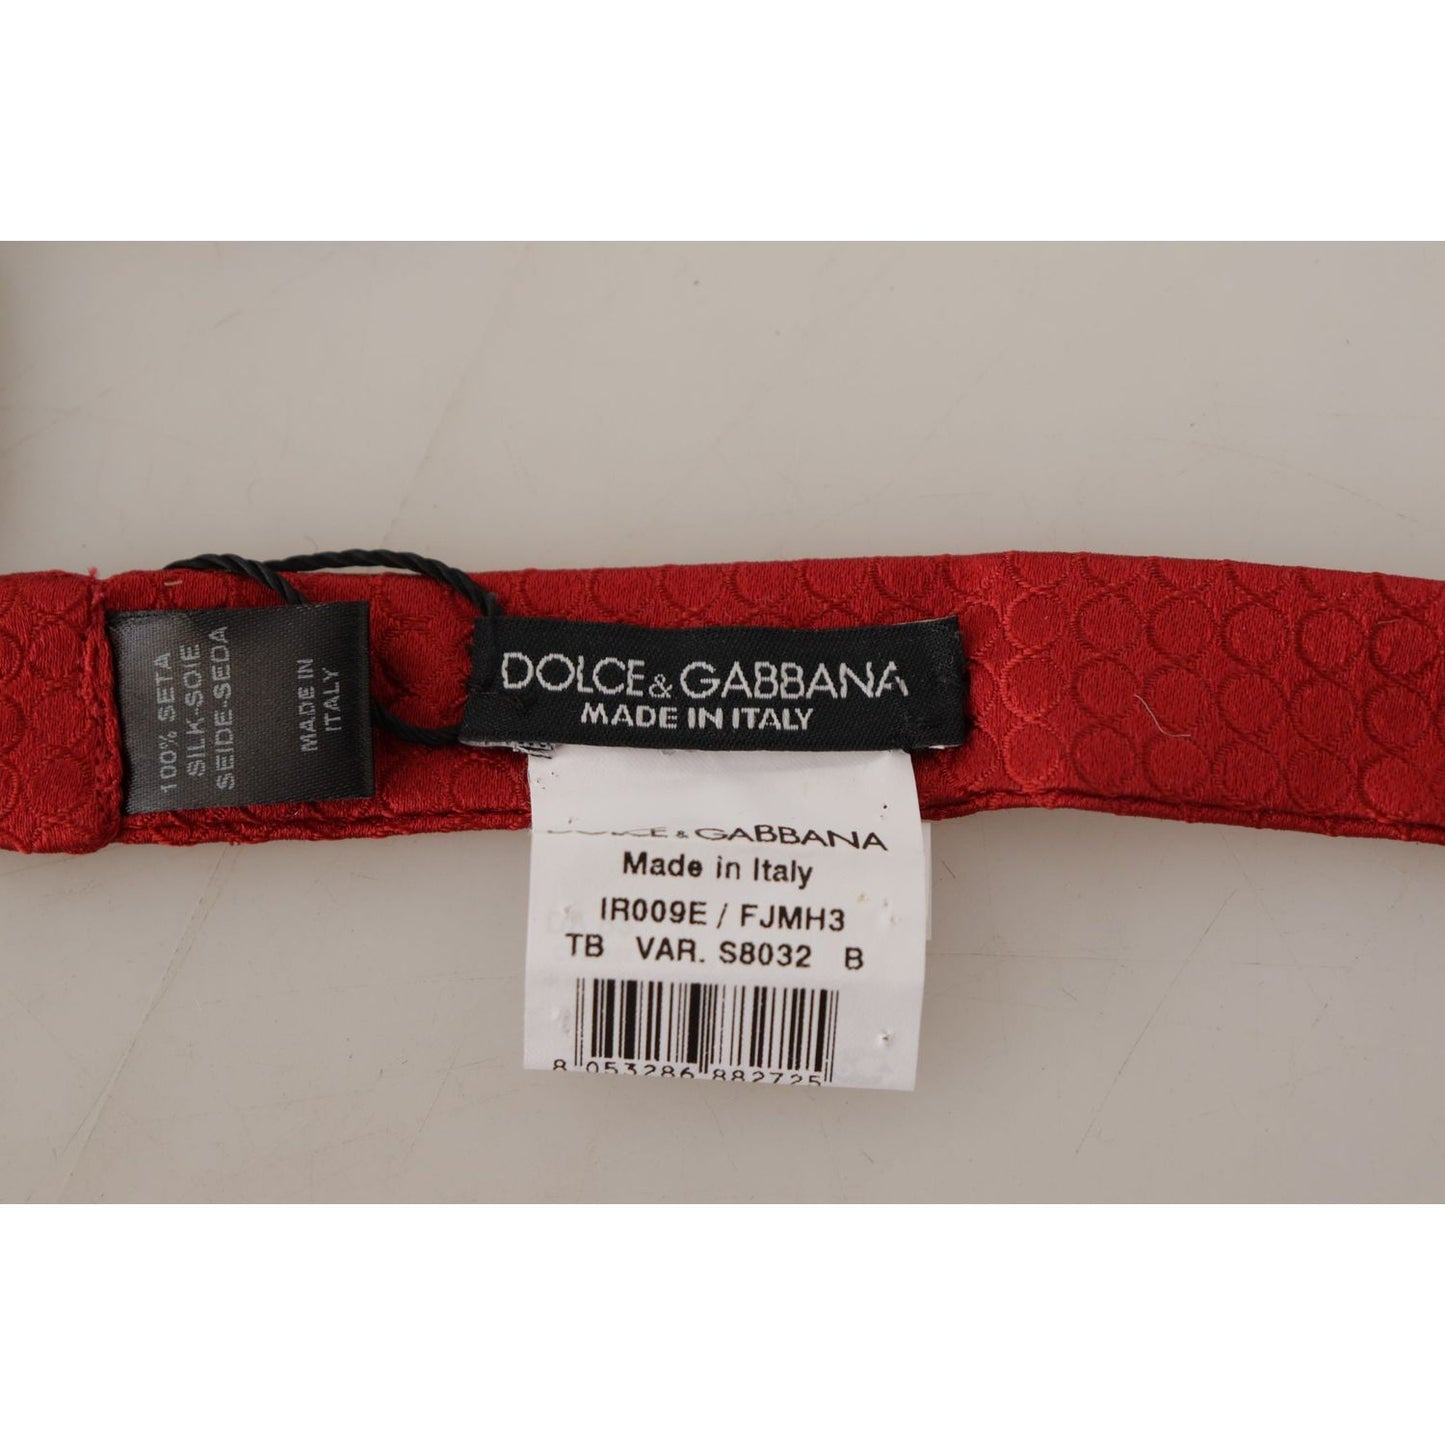 Dolce & Gabbana Elegant Red Silk Tied Bow Tie elegant-red-silk-tied-bow-tie IMG_7633-scaled-ba52c3f4-940.jpg